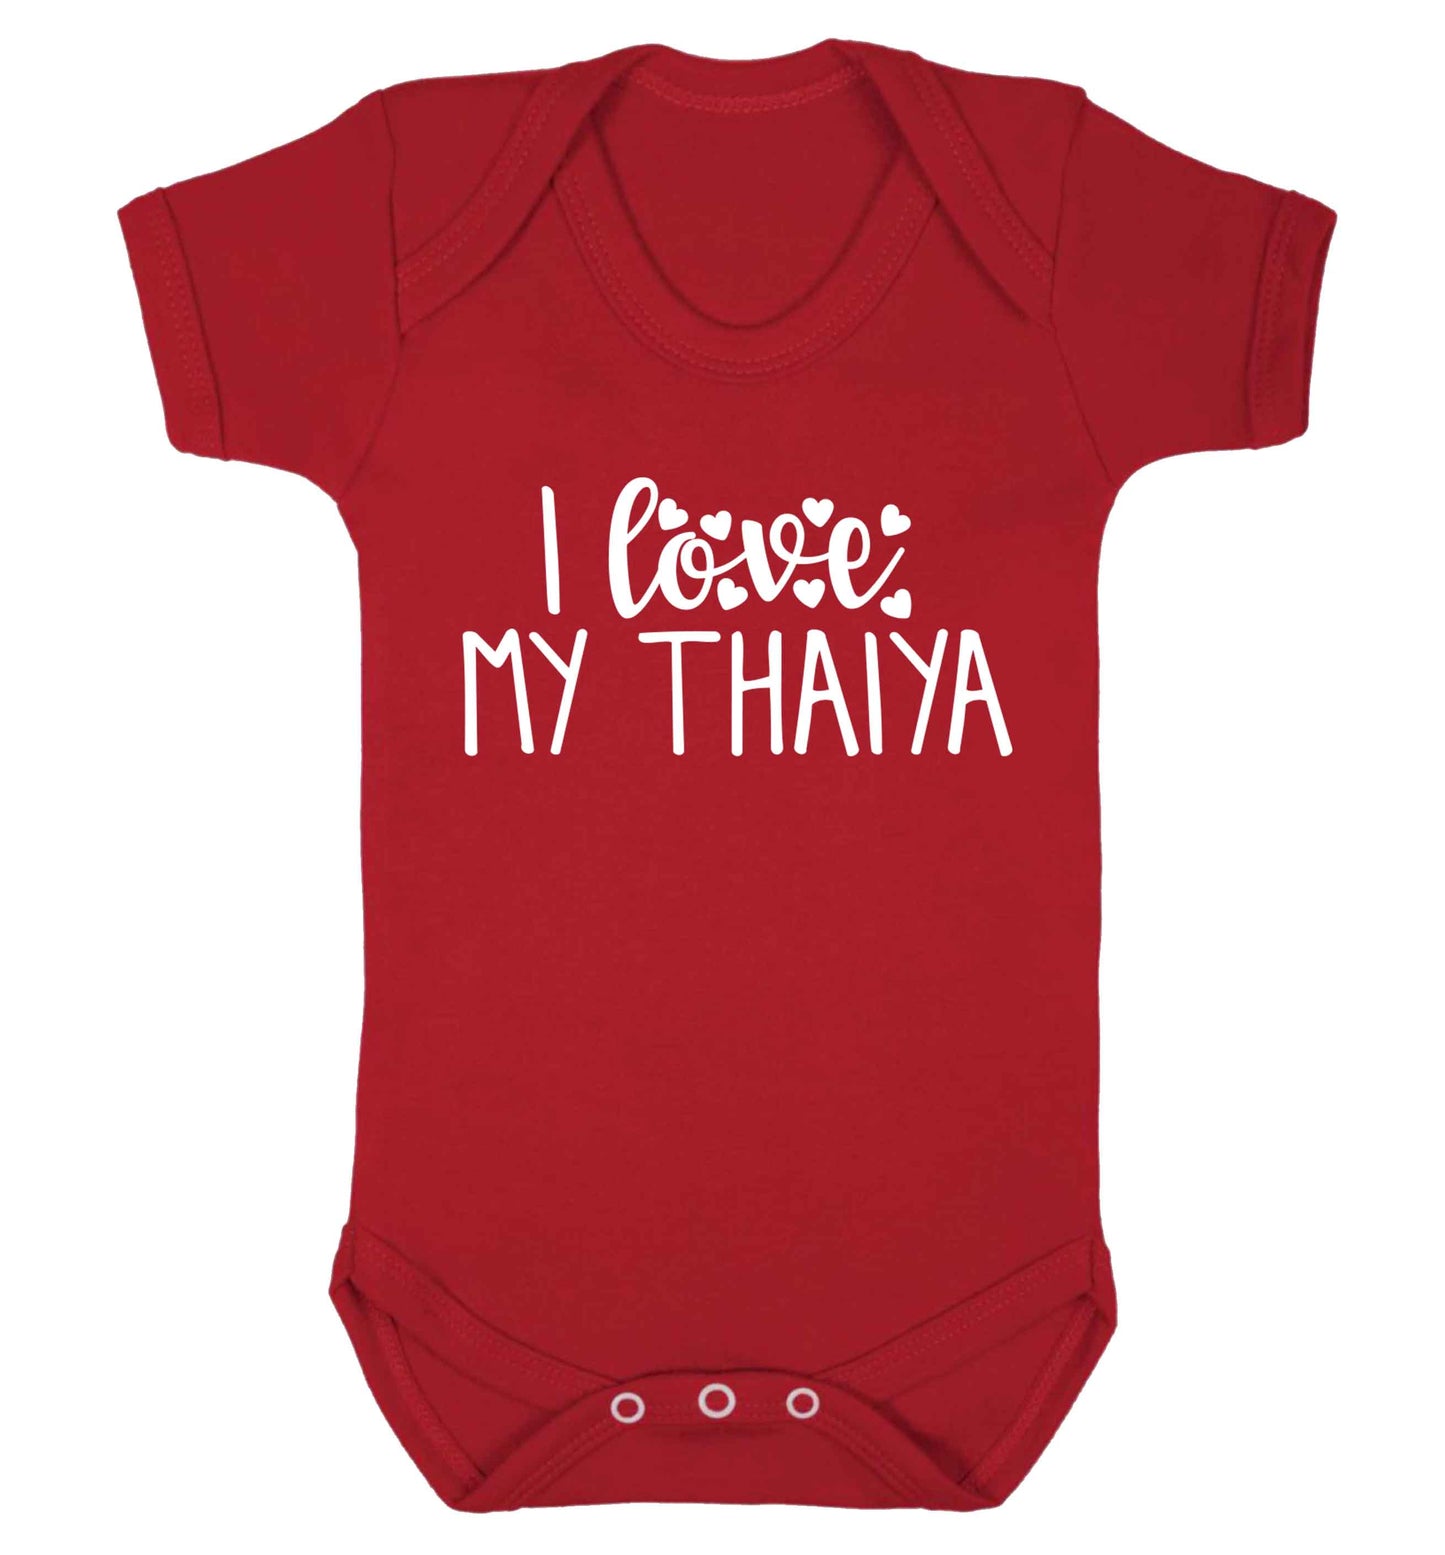 I love my thaiya Baby Vest red 18-24 months